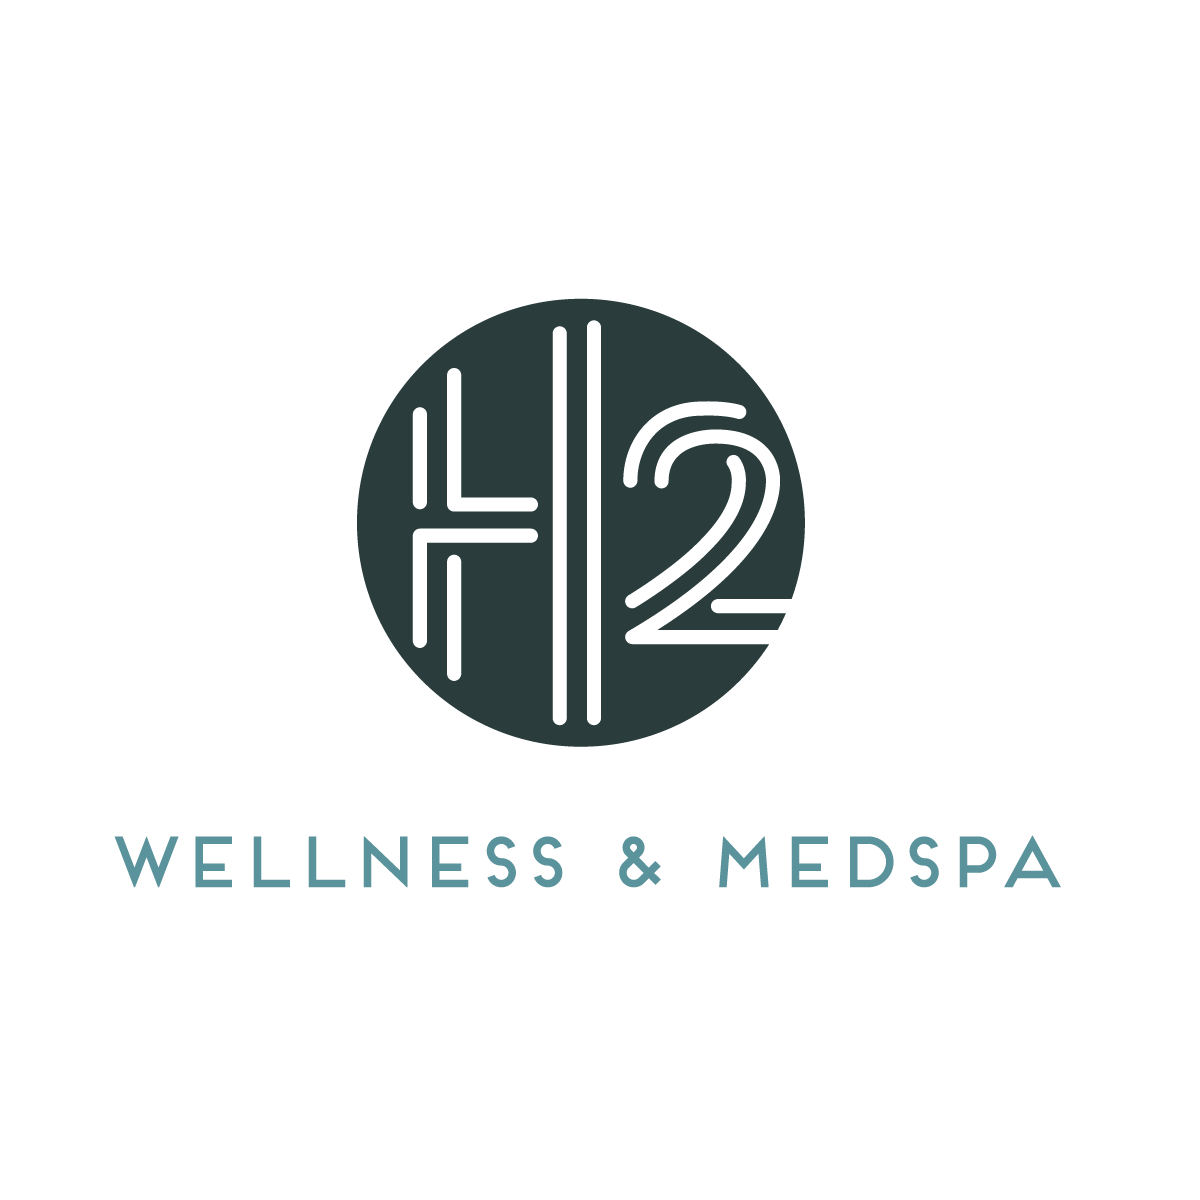 H2 Wellness & MedSpa